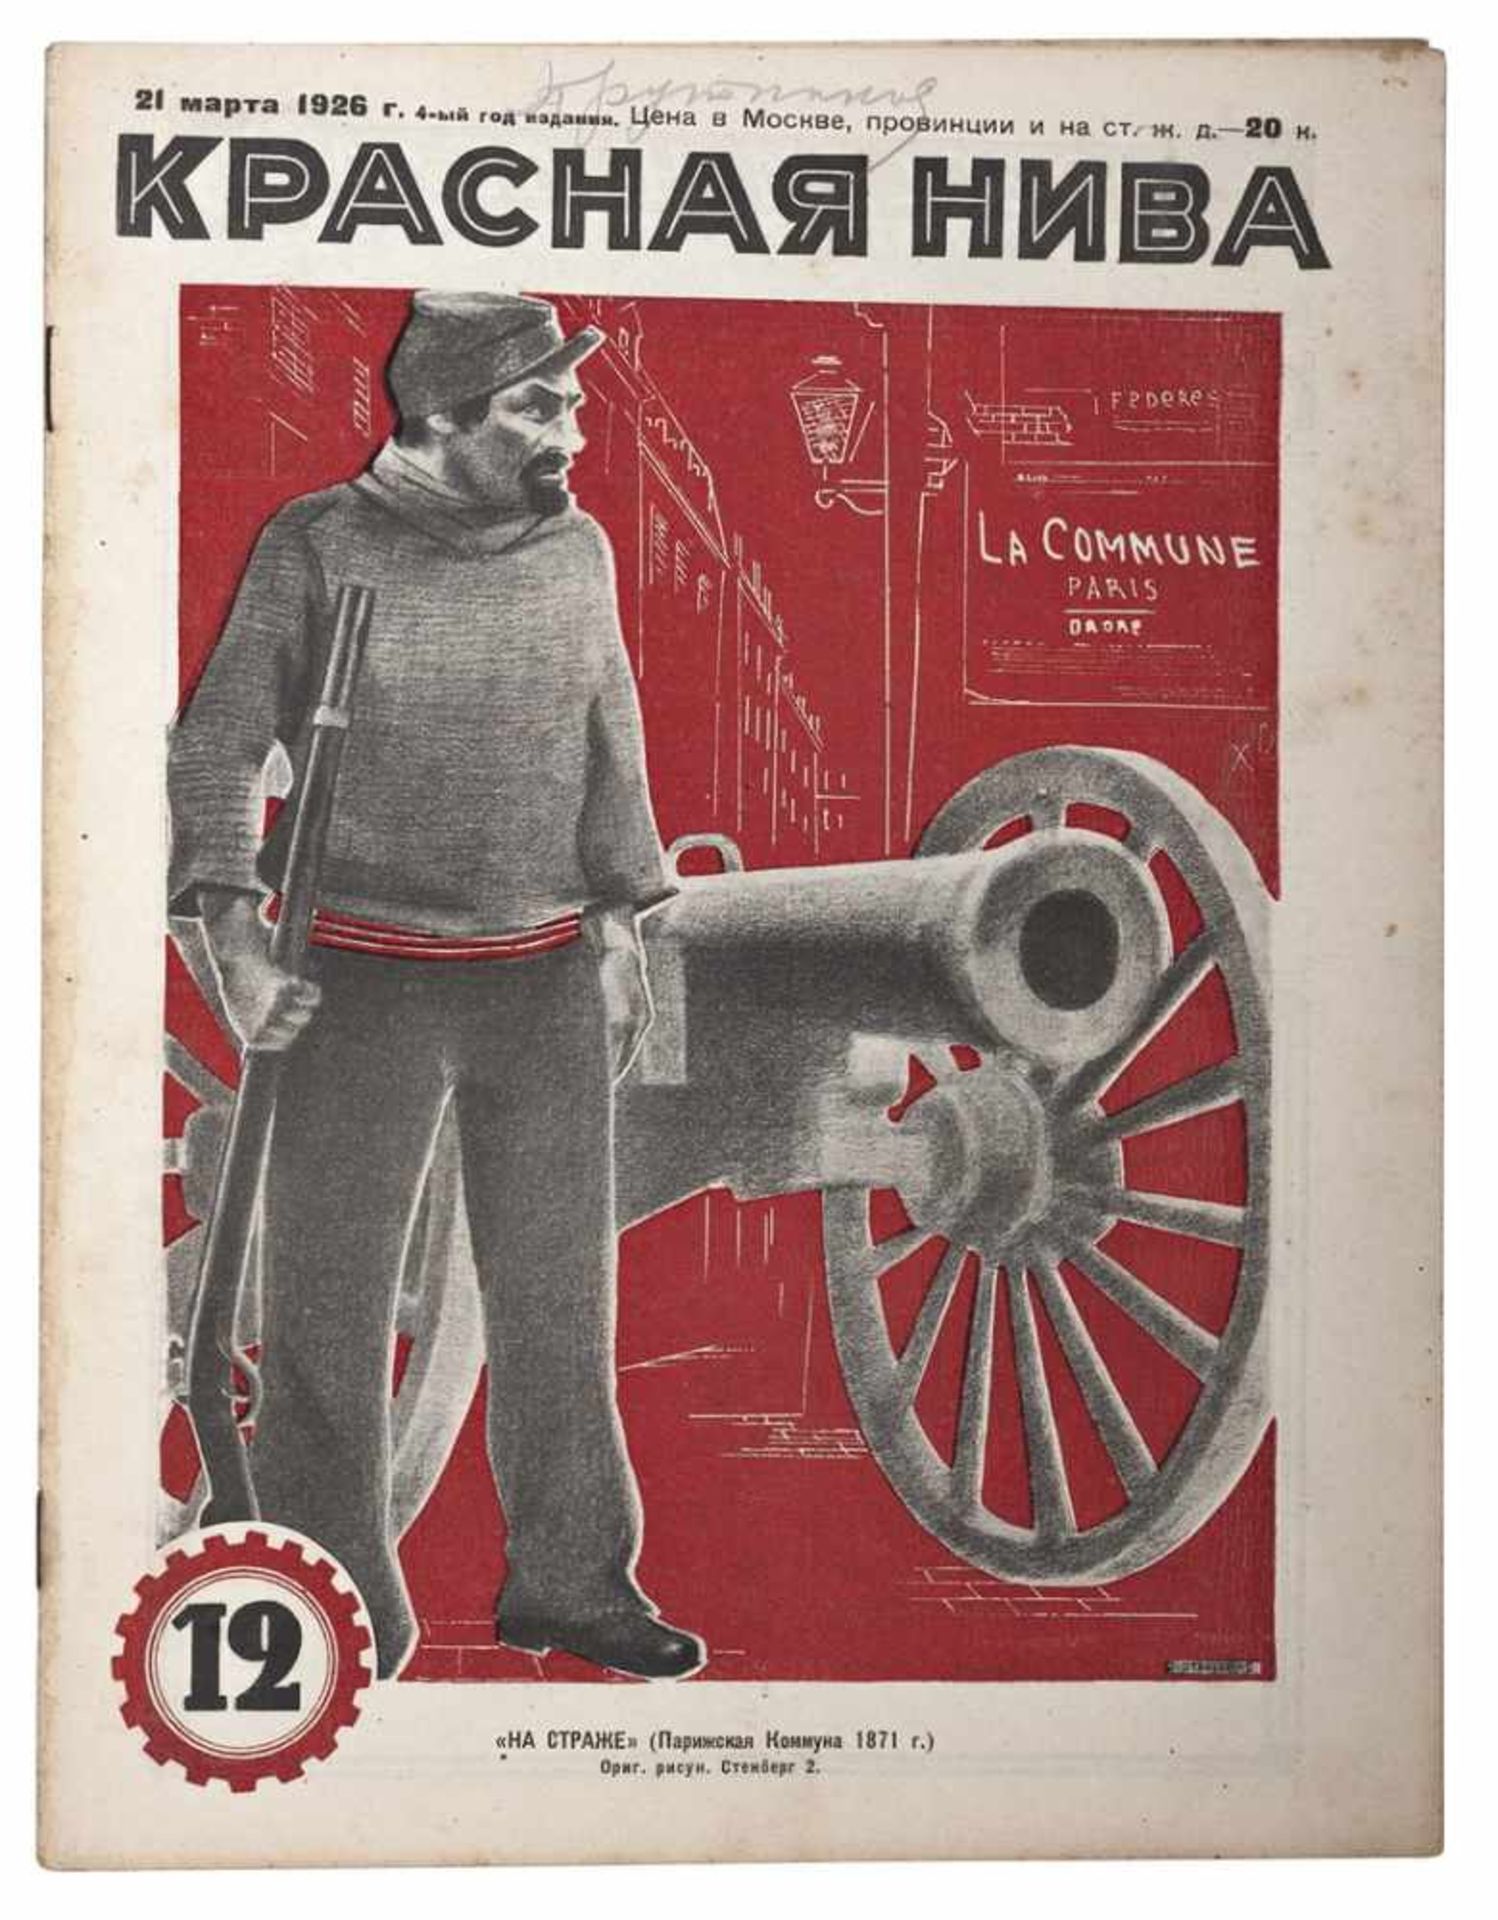 [Soviet art]. Krasnaya Niva: [Magazine]. Issues 12. Moscow, 1926.